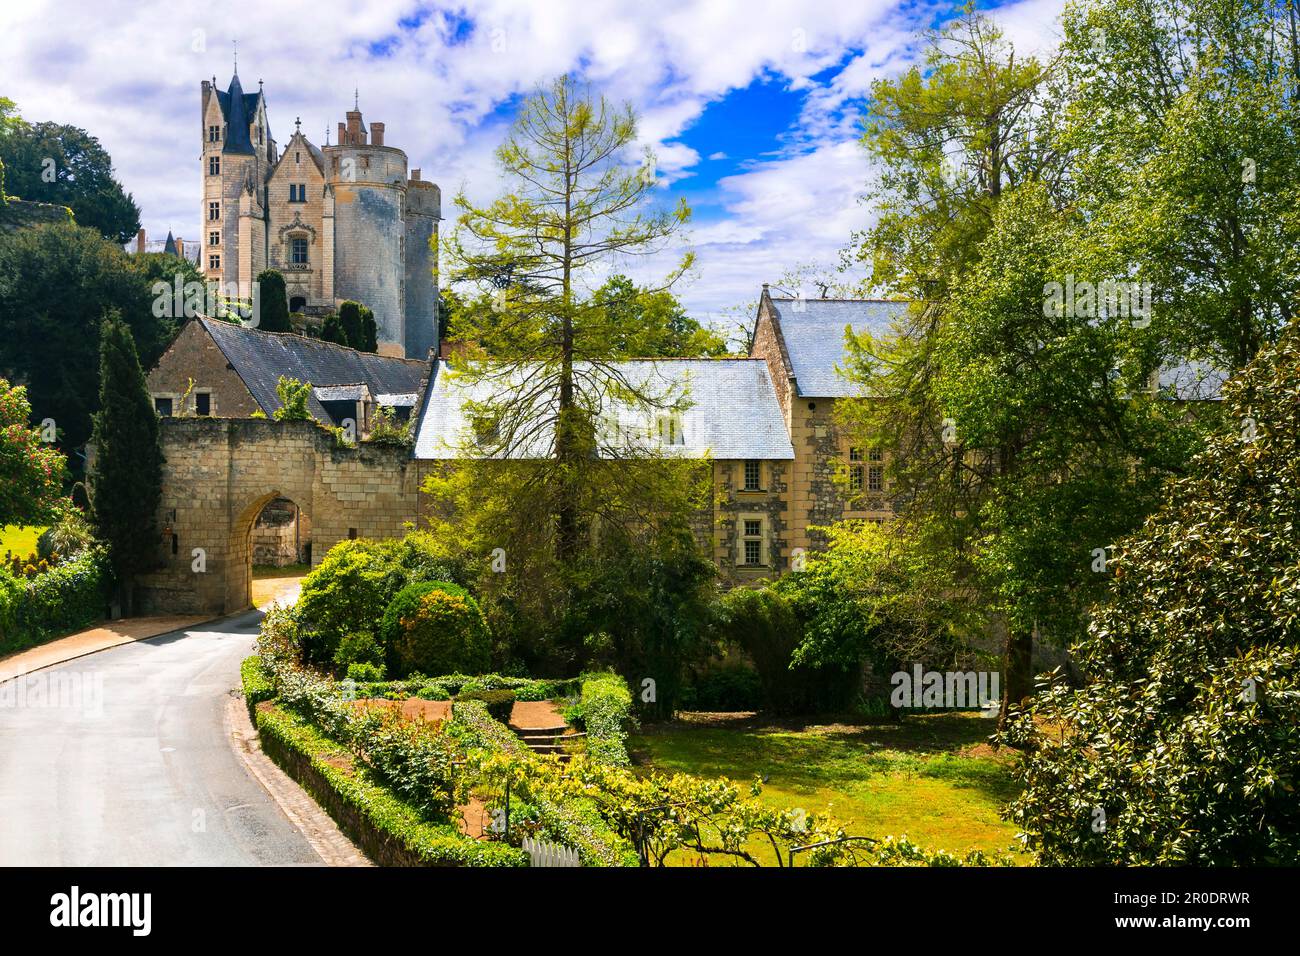 Große mittelalterliche Schlösser im Loiretal - Montreuil-Bellay. Frankreich Stockfoto